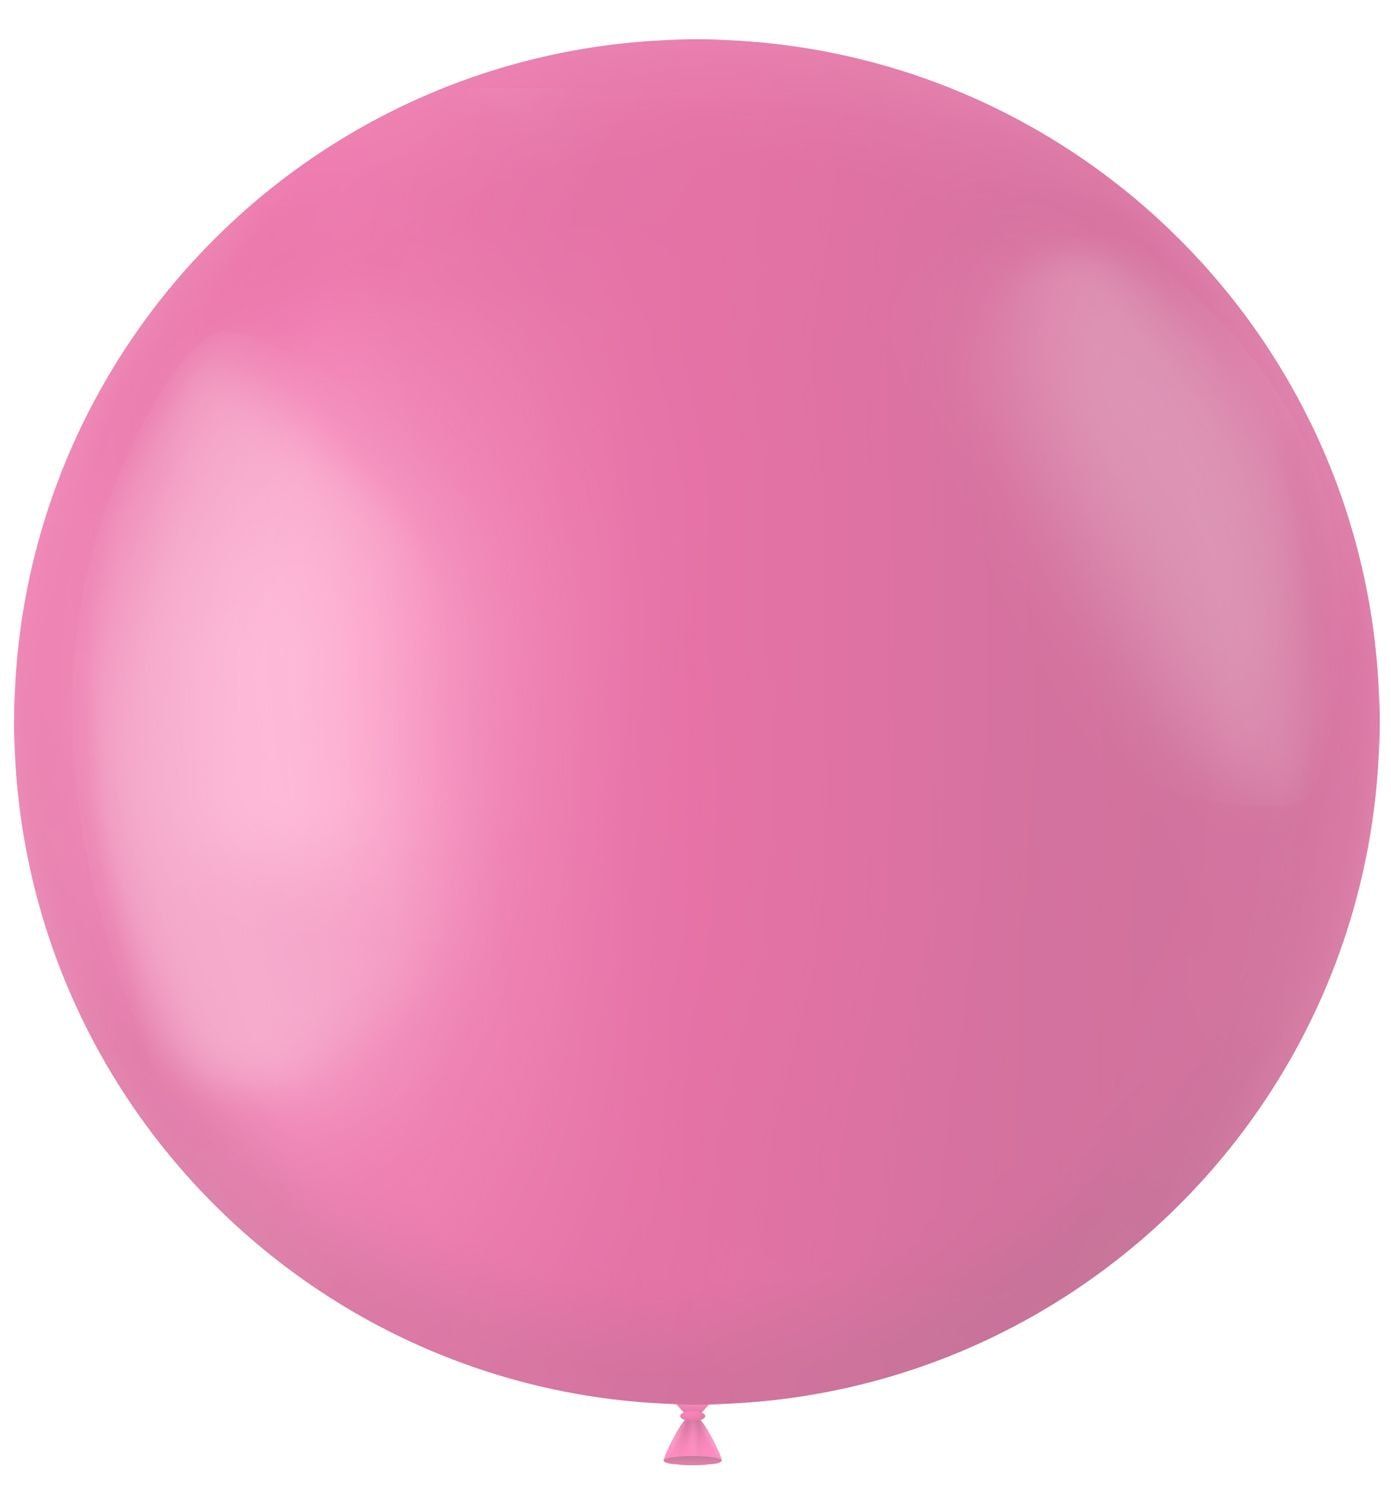 Knal roze ballon matte kleur